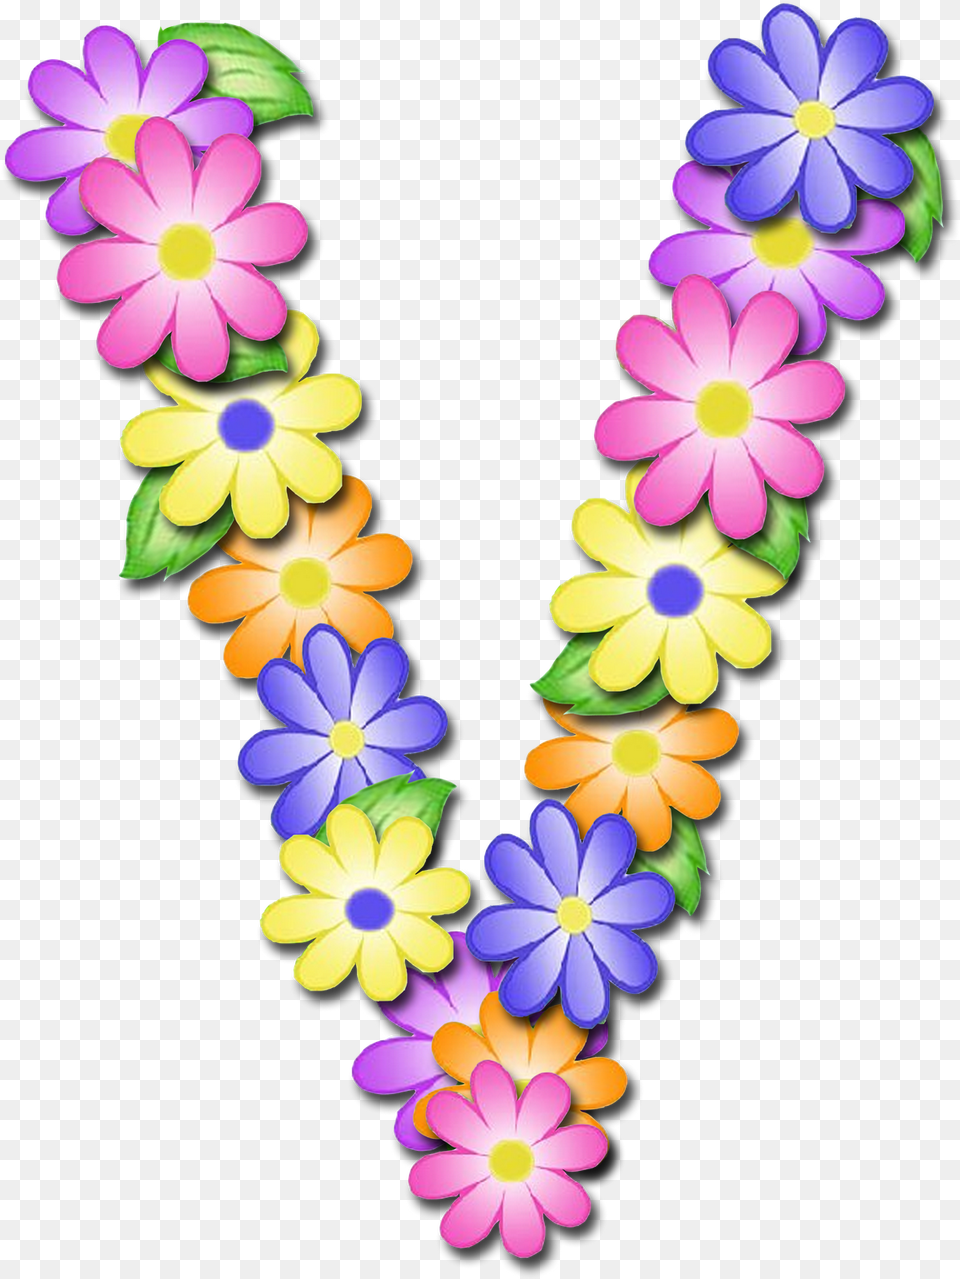 Name Clipart Susmi Alfabeto De Primavera Letras, Accessories, Flower, Flower Arrangement, Ornament Png Image